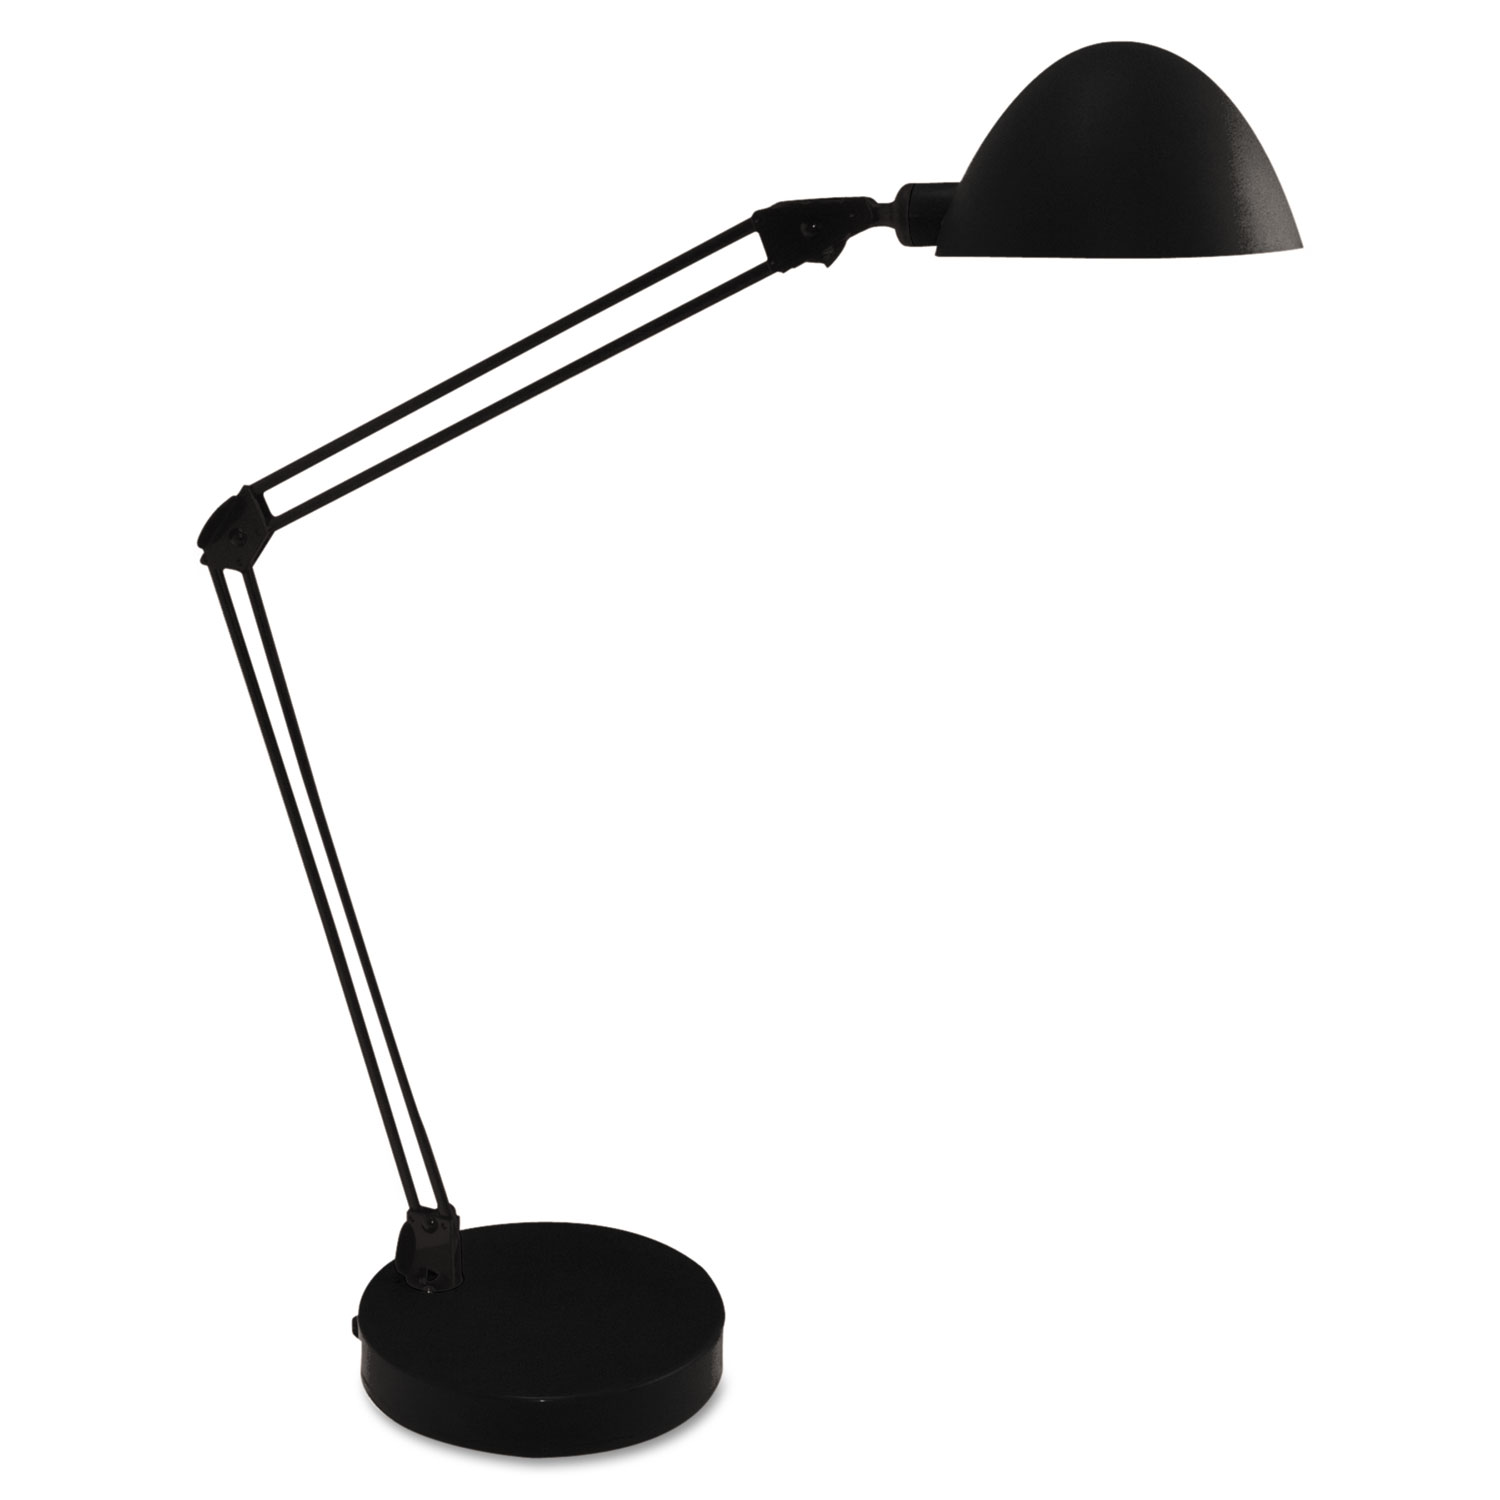  Ledu L9142BK LED Desk and Task Lamp, 5W, 5.5w x 13.38d x 21.25h, Black (LEDL9142BK) 